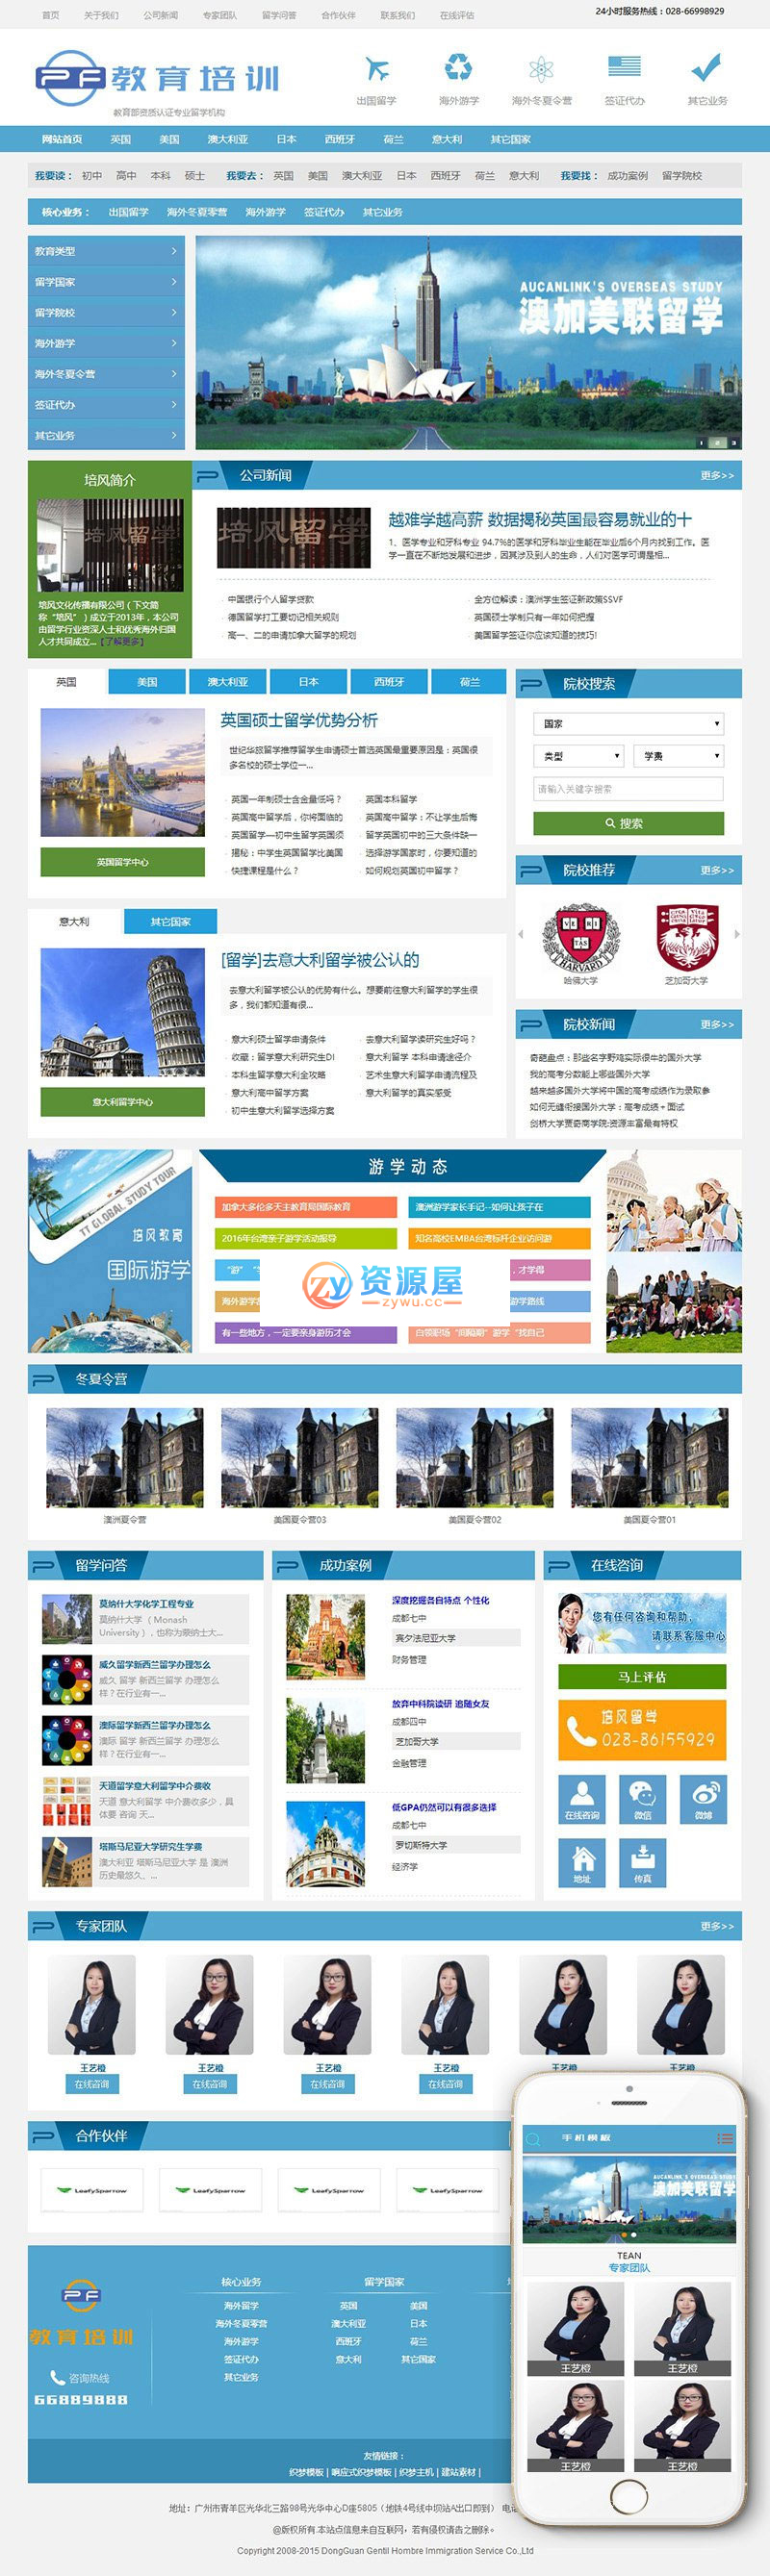 织梦主题模板dedecms系统出国留学教育培训机构网站模板